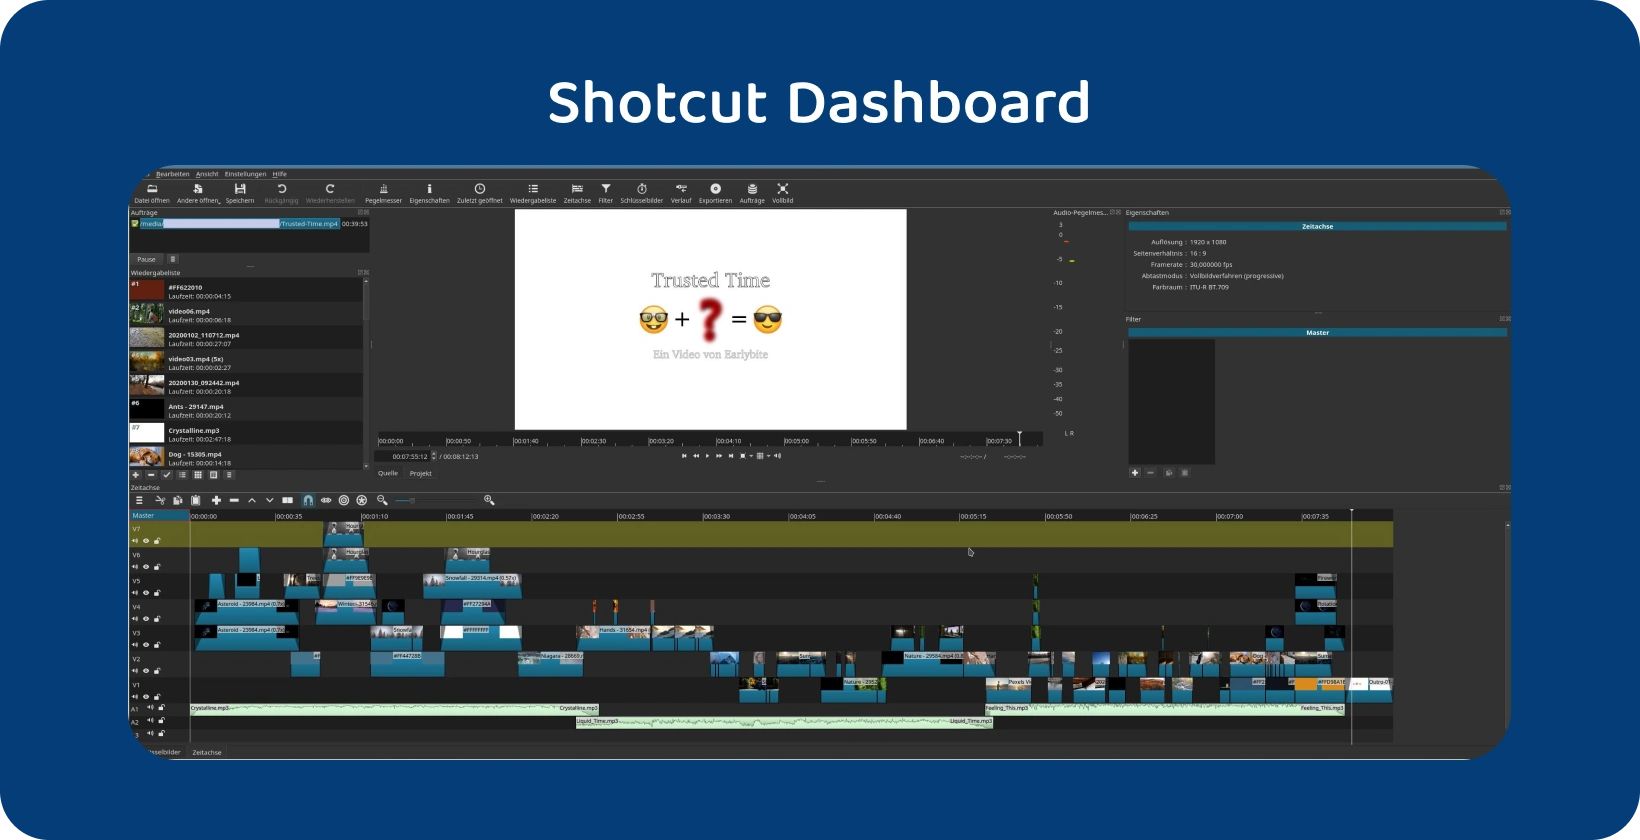 Phần mềm chỉnh sửa video Shotcut hiển thị một dòng thời gian phức tạp với nhiều bản nhạc, cho biết một dự án nâng cao.